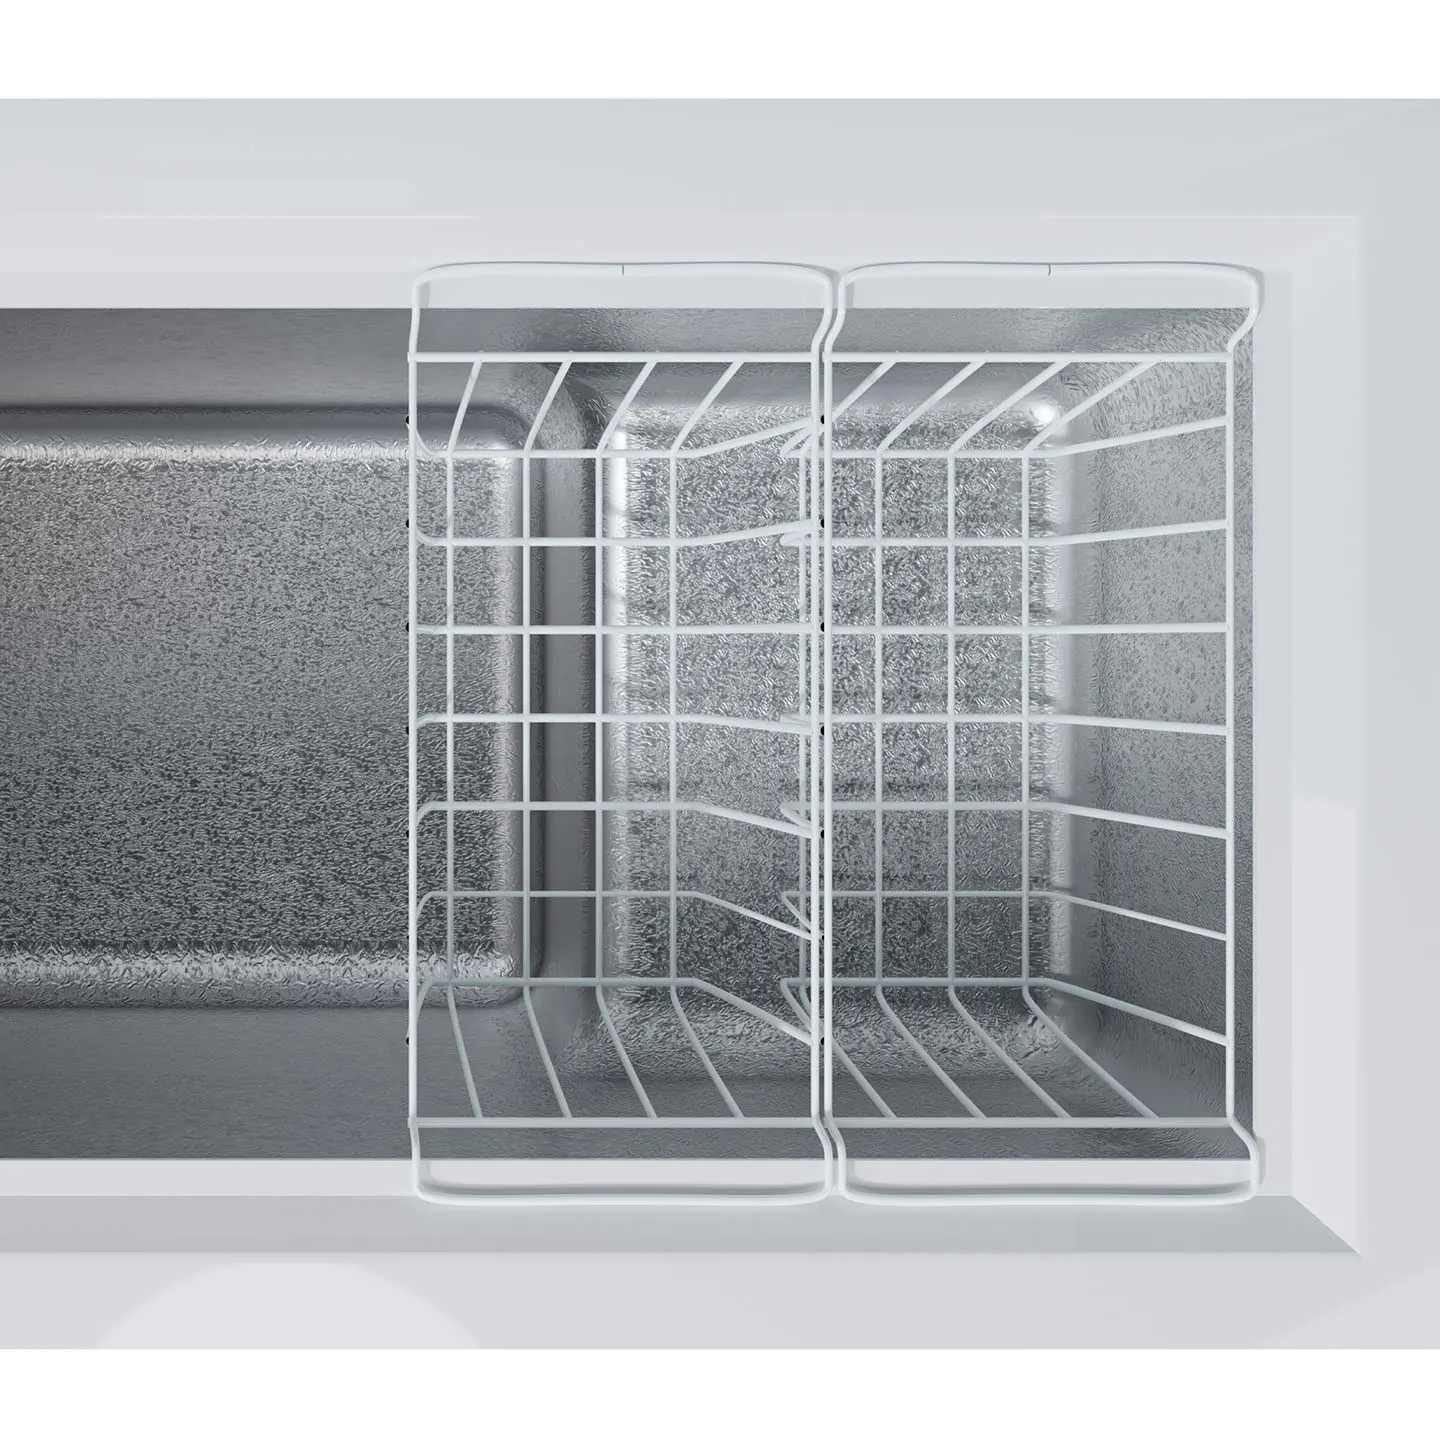 Freezer interior